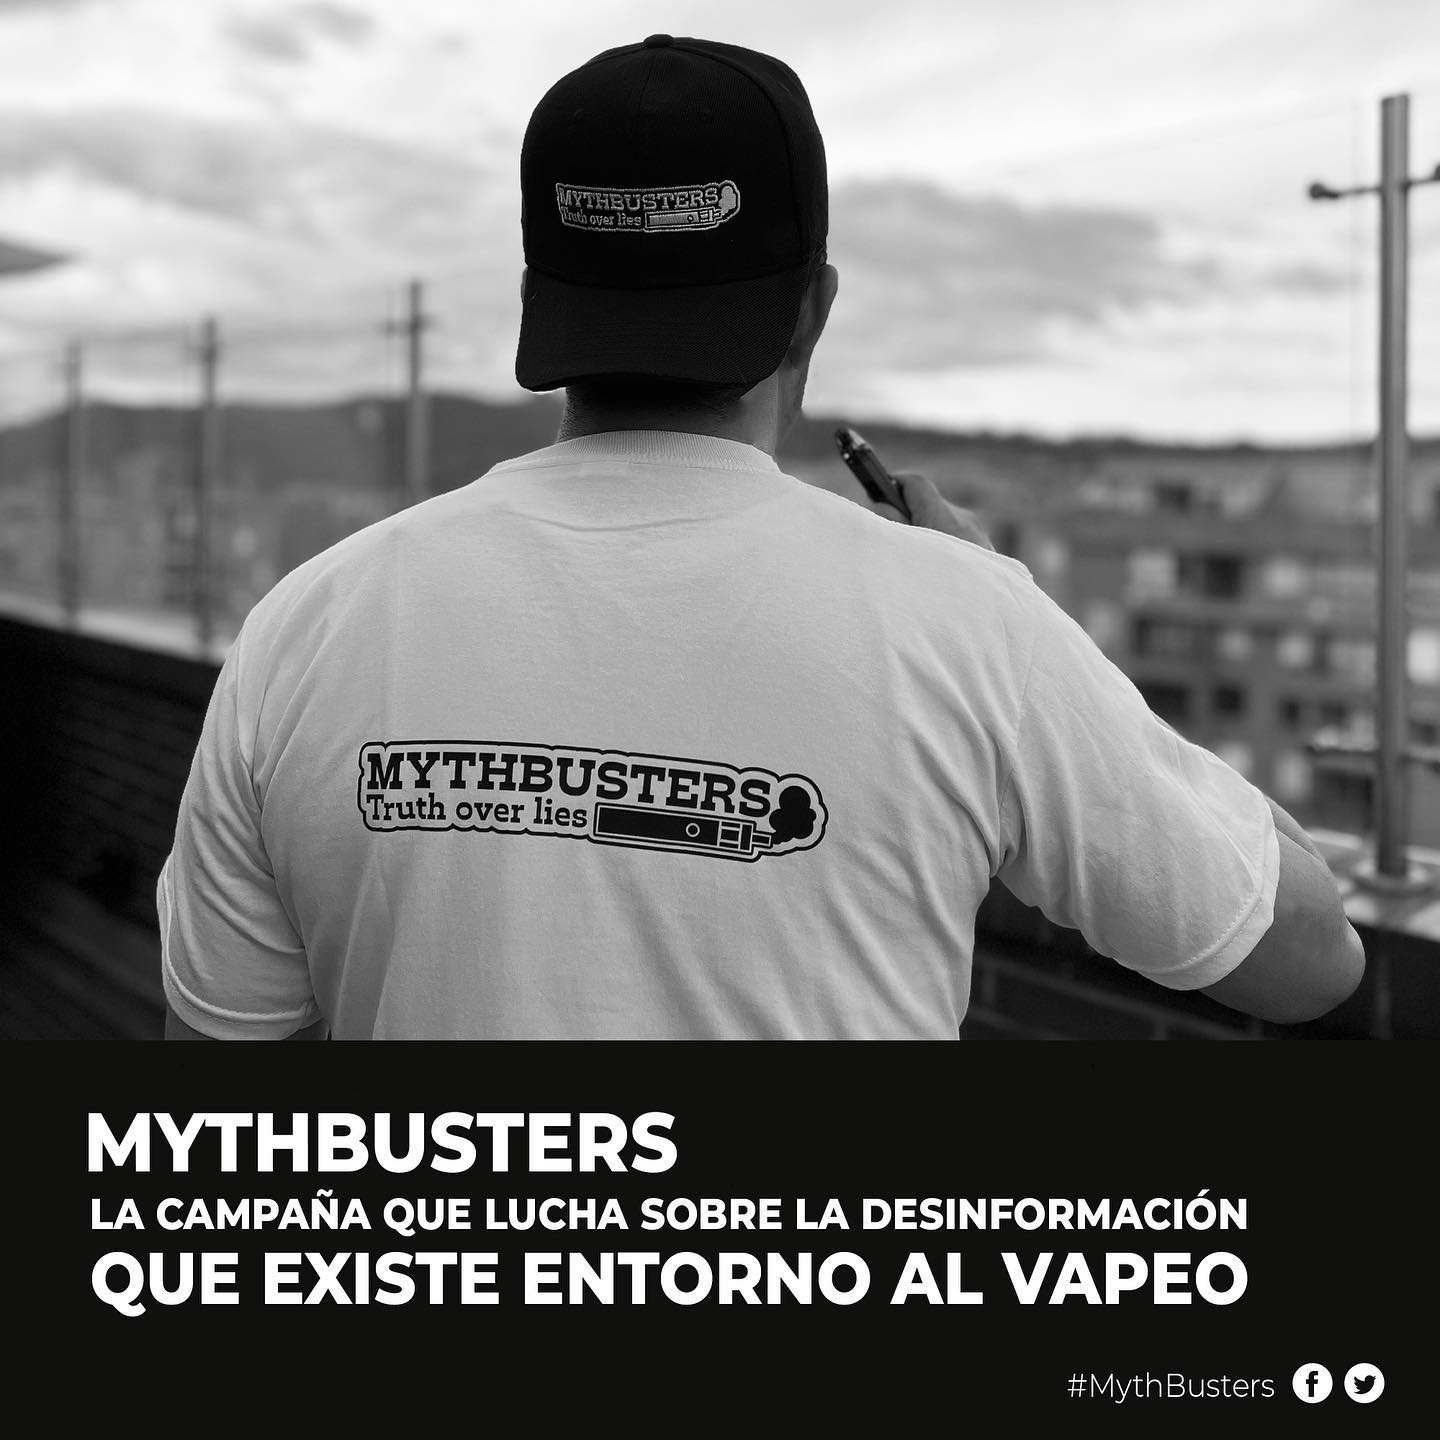 Campaña global de vapers busca desmentir mitos y promover la reducción de riesgos del tabaco